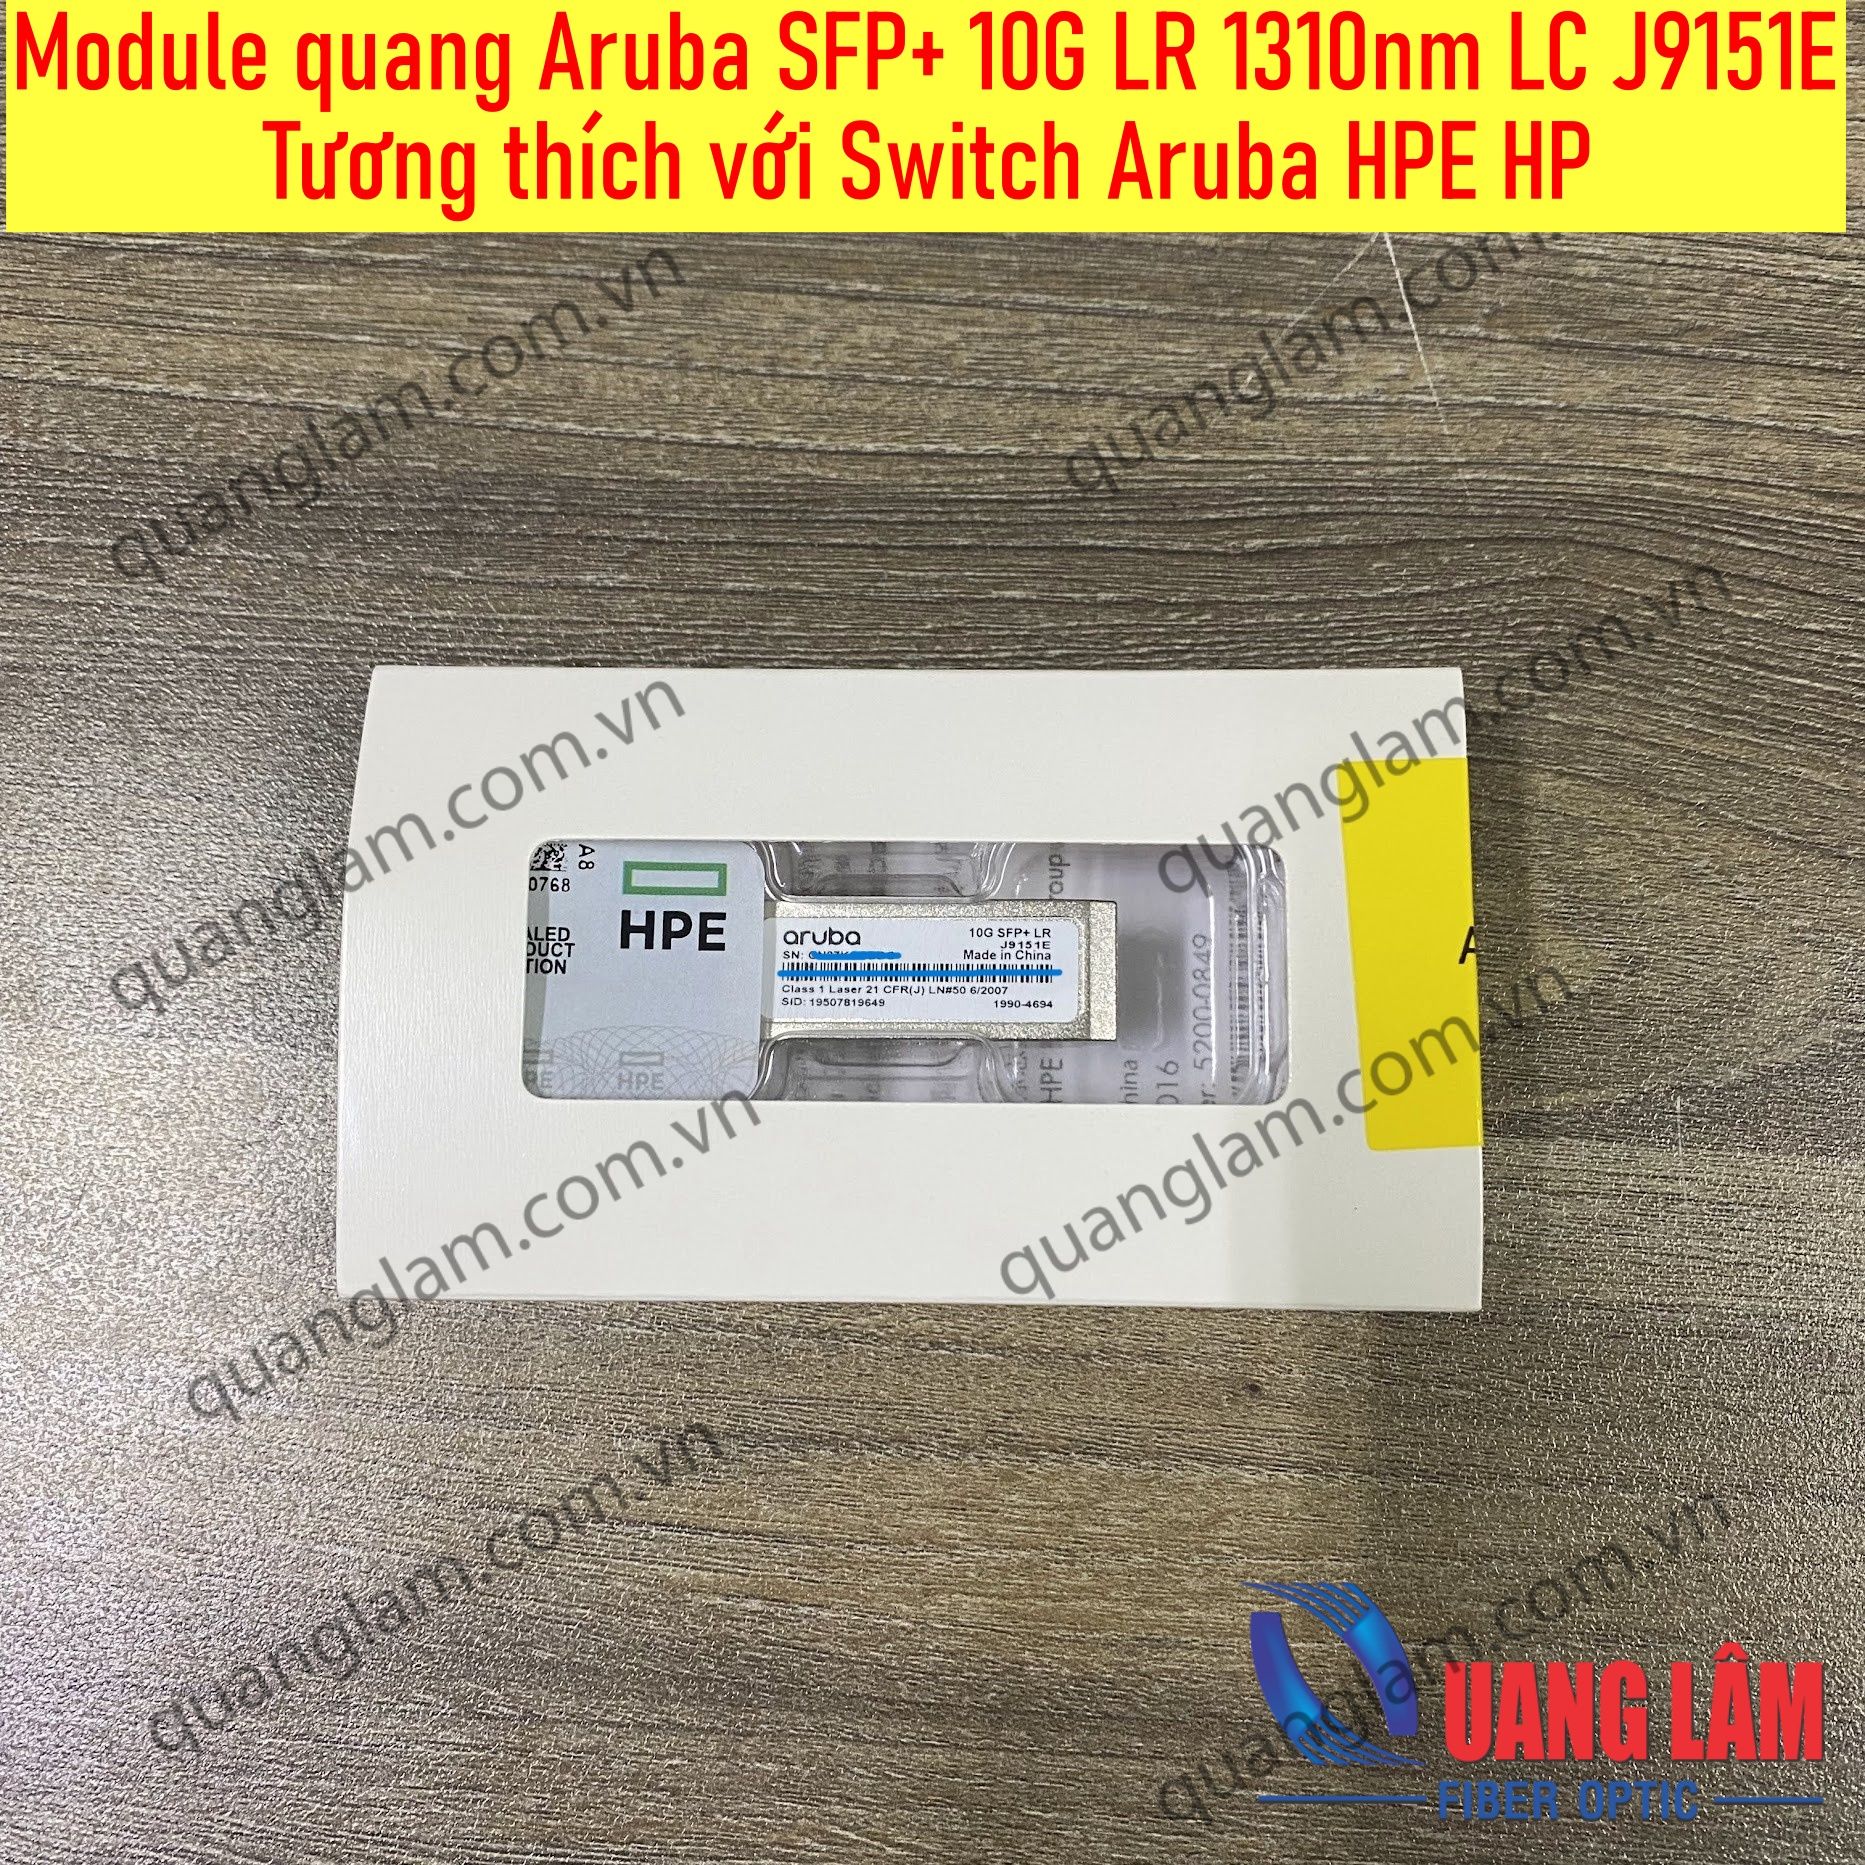 Module quang Aruba SFP+ 10G LR 1310nm LC J9151E  Tương thích với Switch Aruba HPE HP